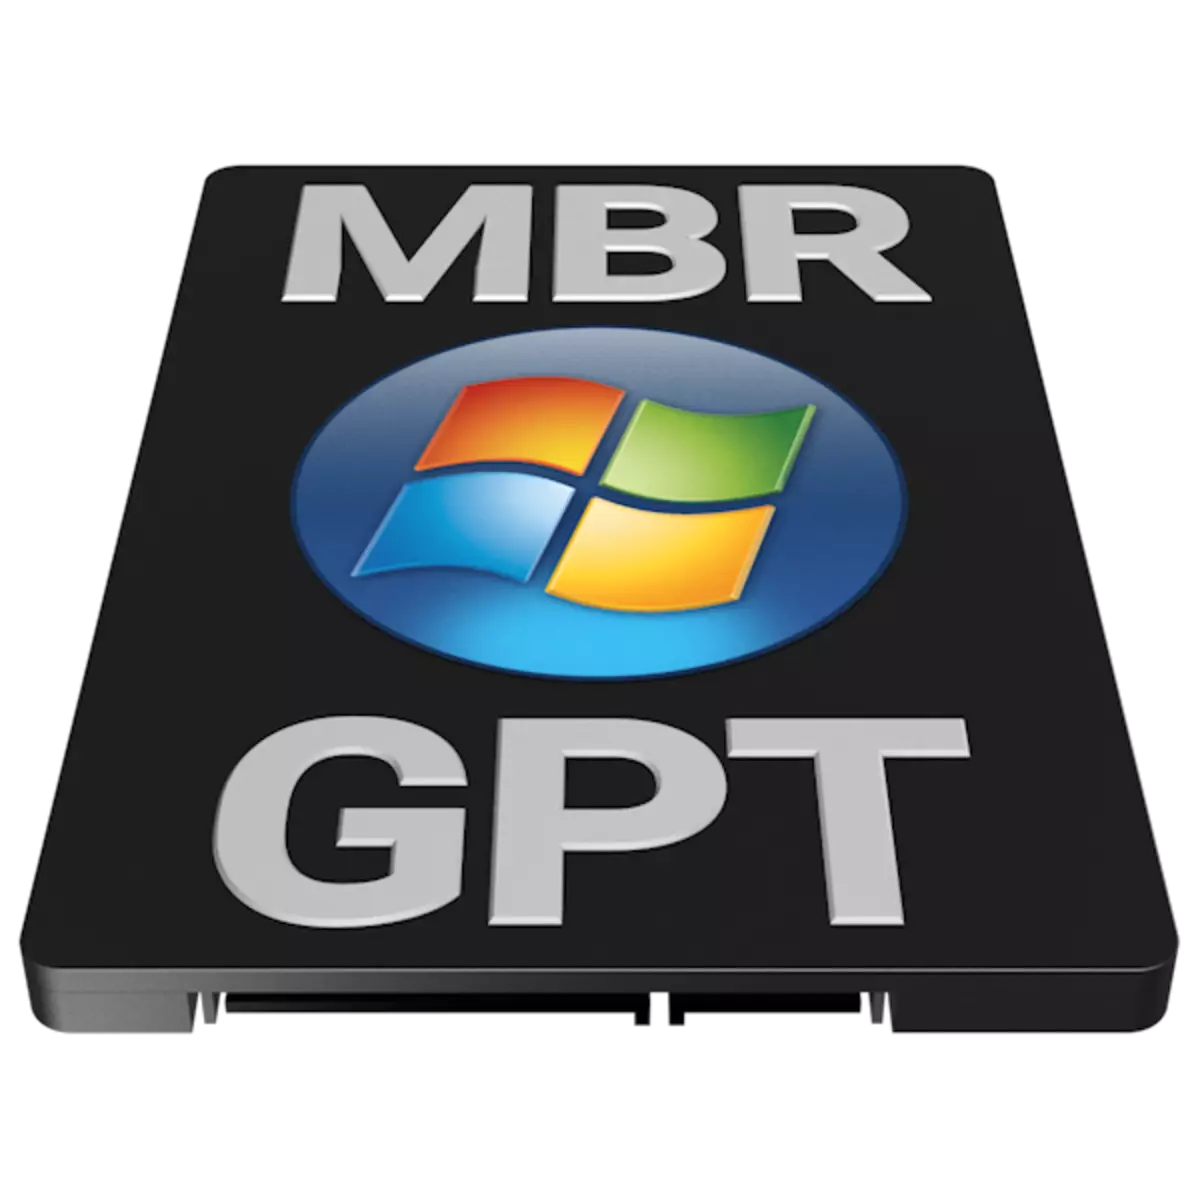 GPT o MBR per a Windows 7 Què triar